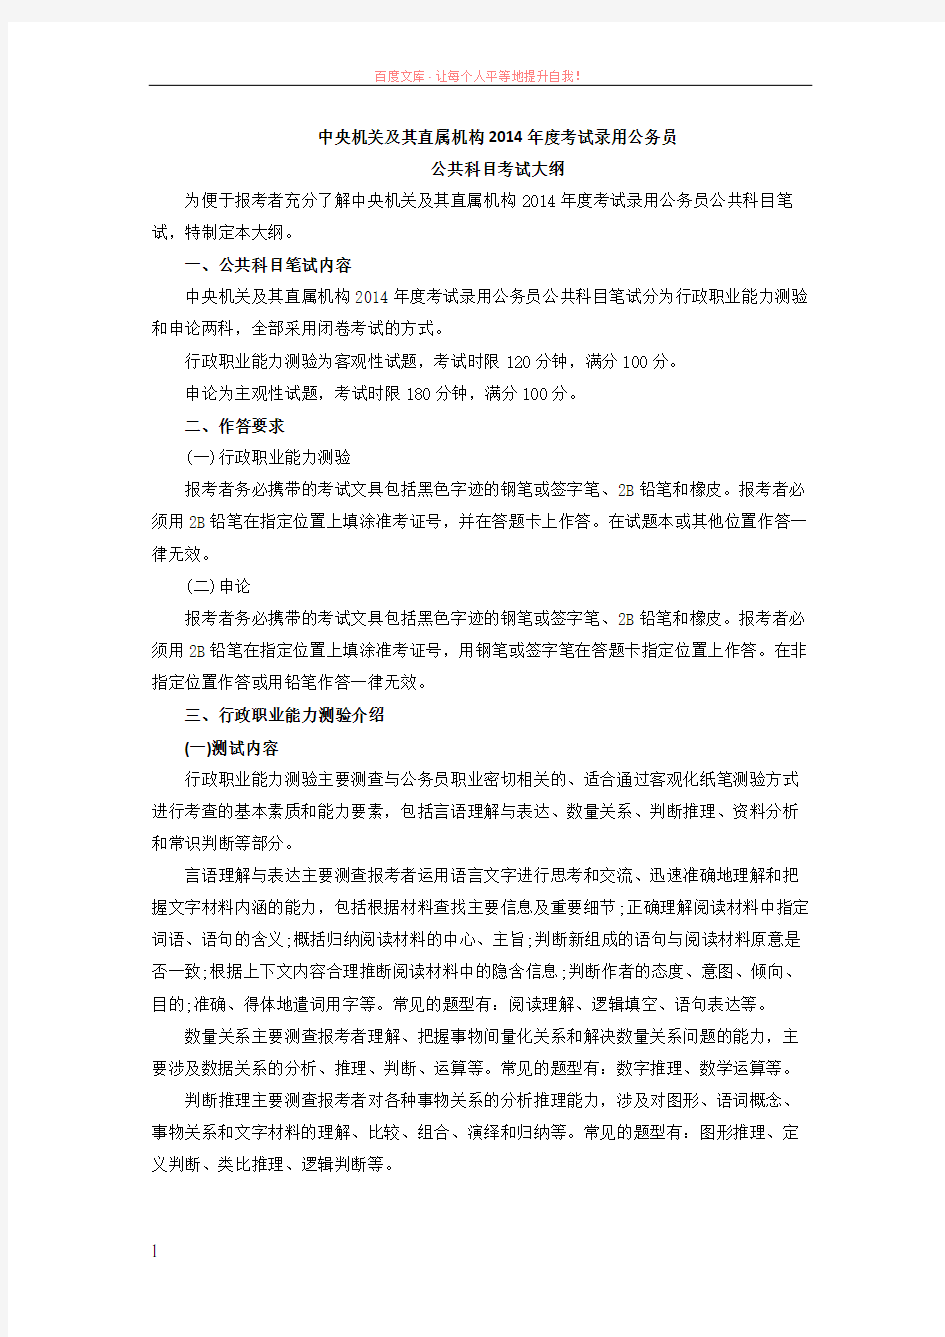 2019年黑龙江省公务员考试公共科目考试大纲